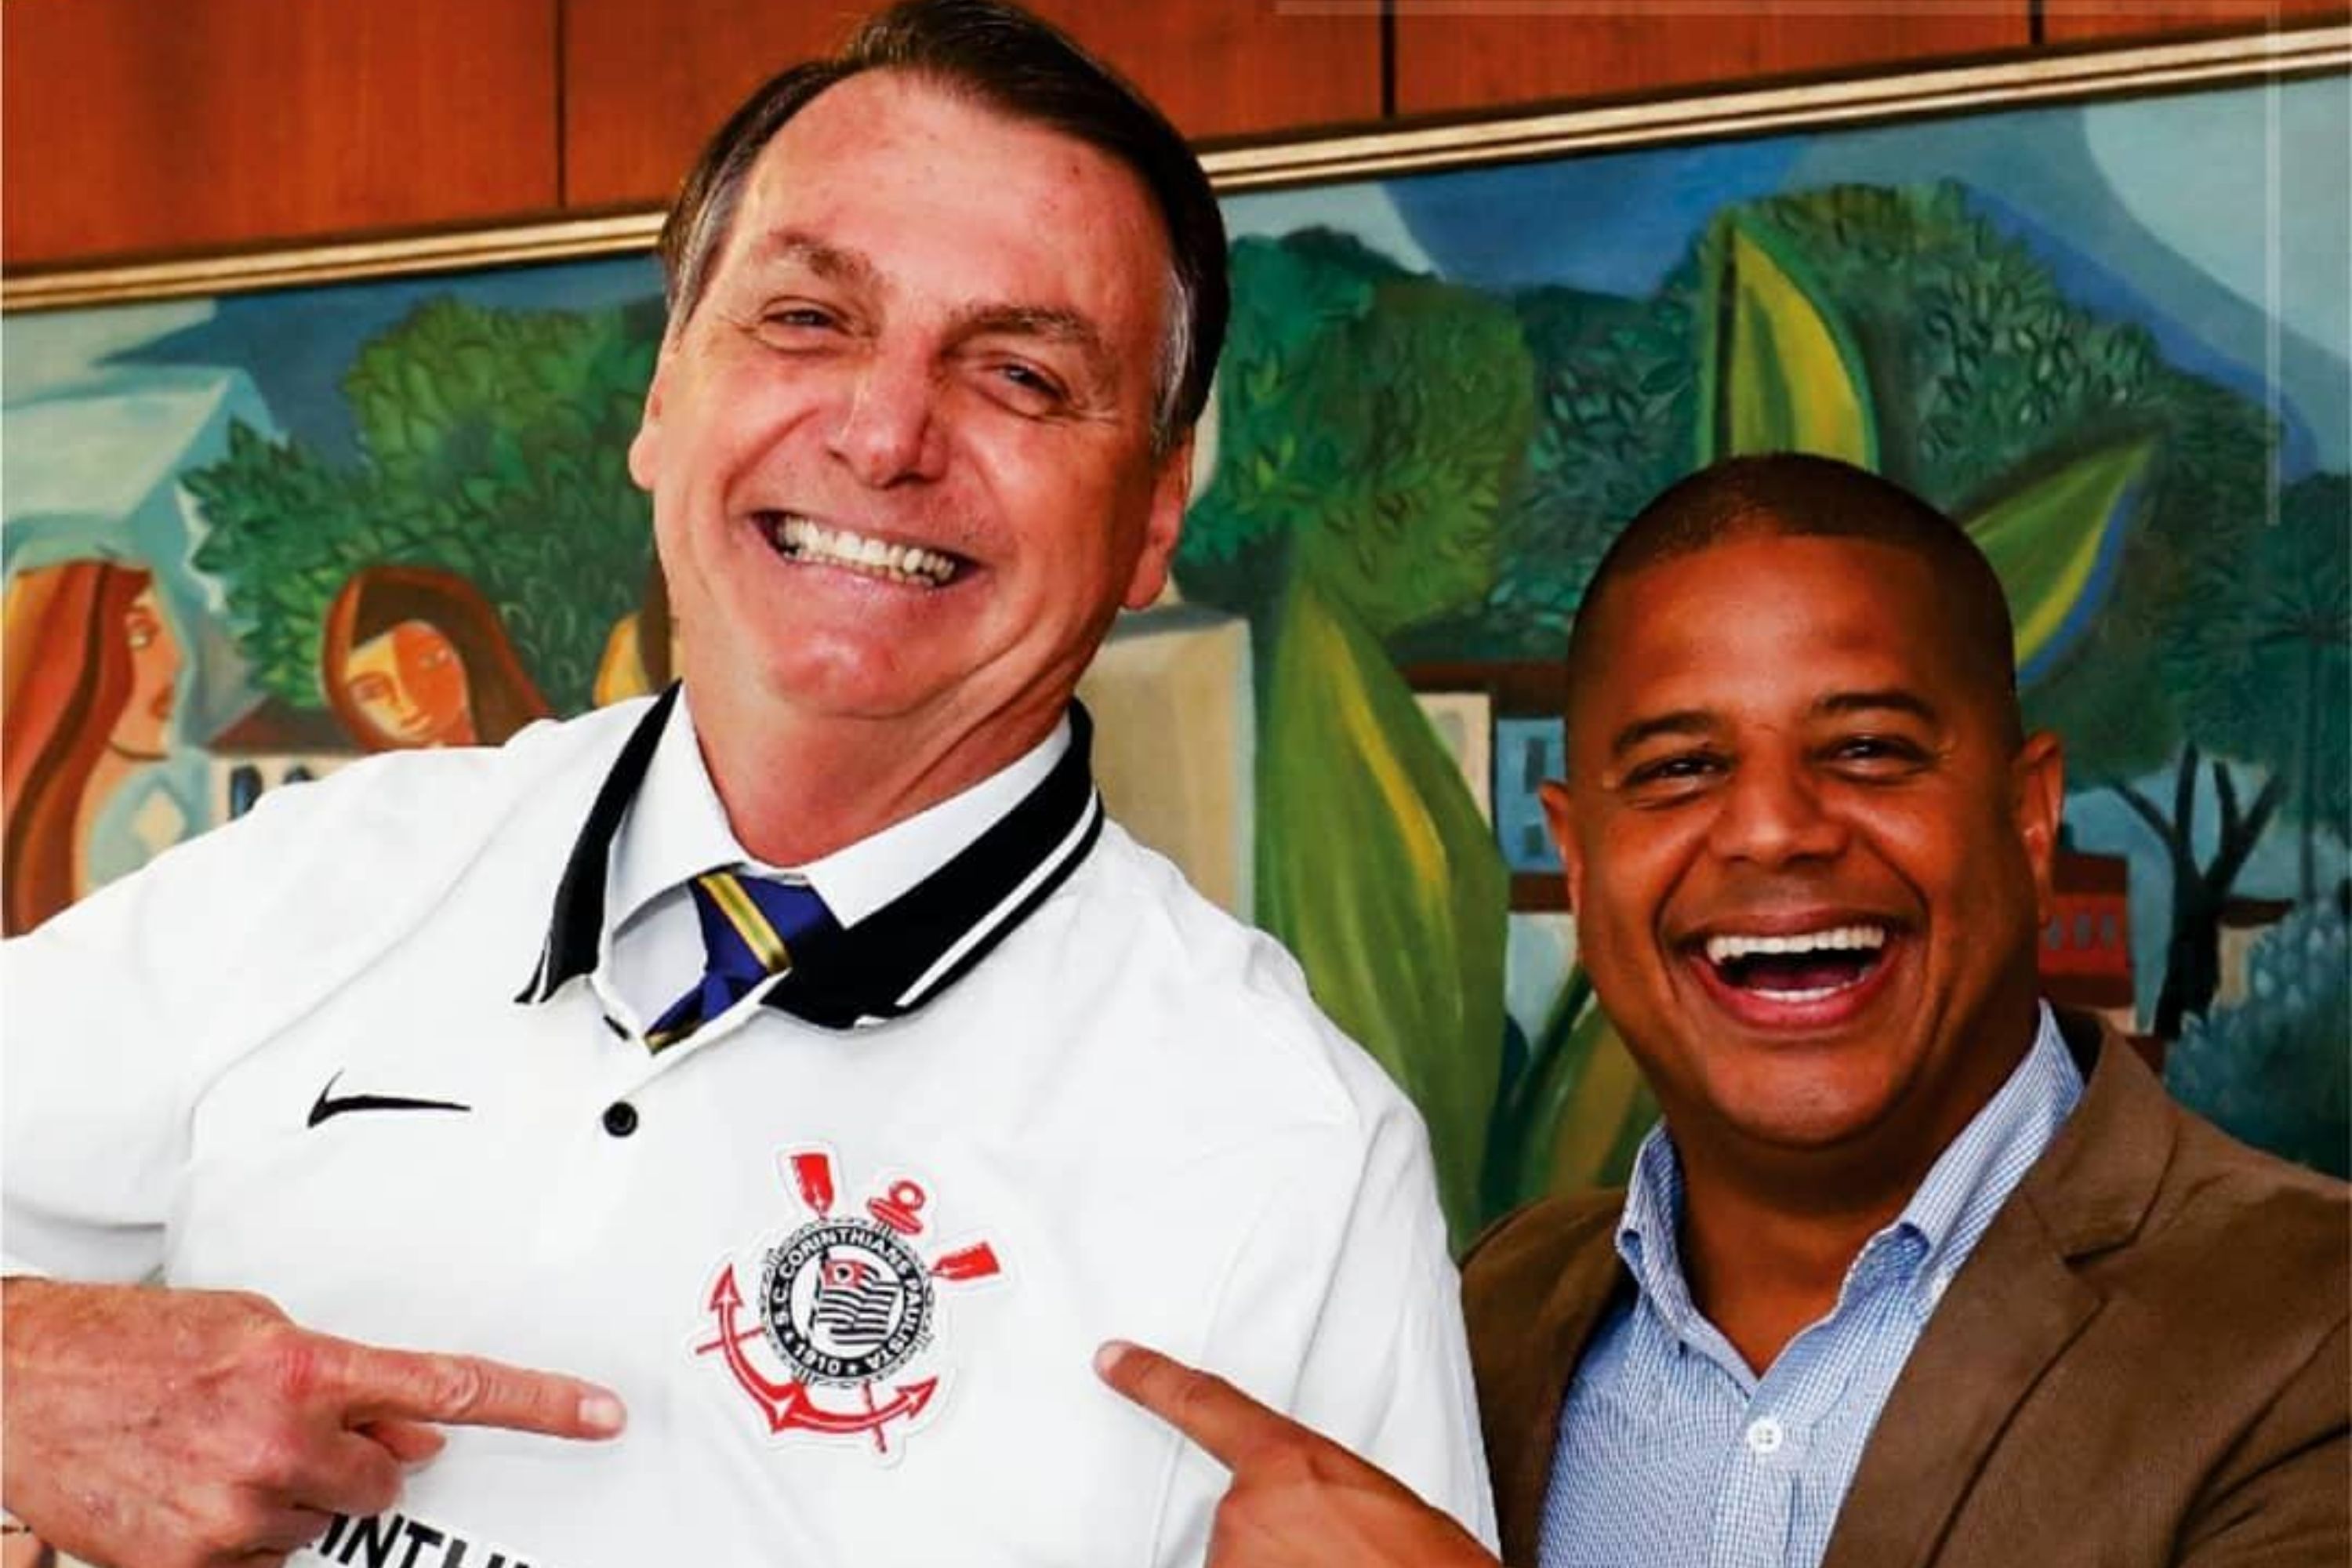 Comentaristas da Globo apostam no Palmeiras contra Atlético; veja